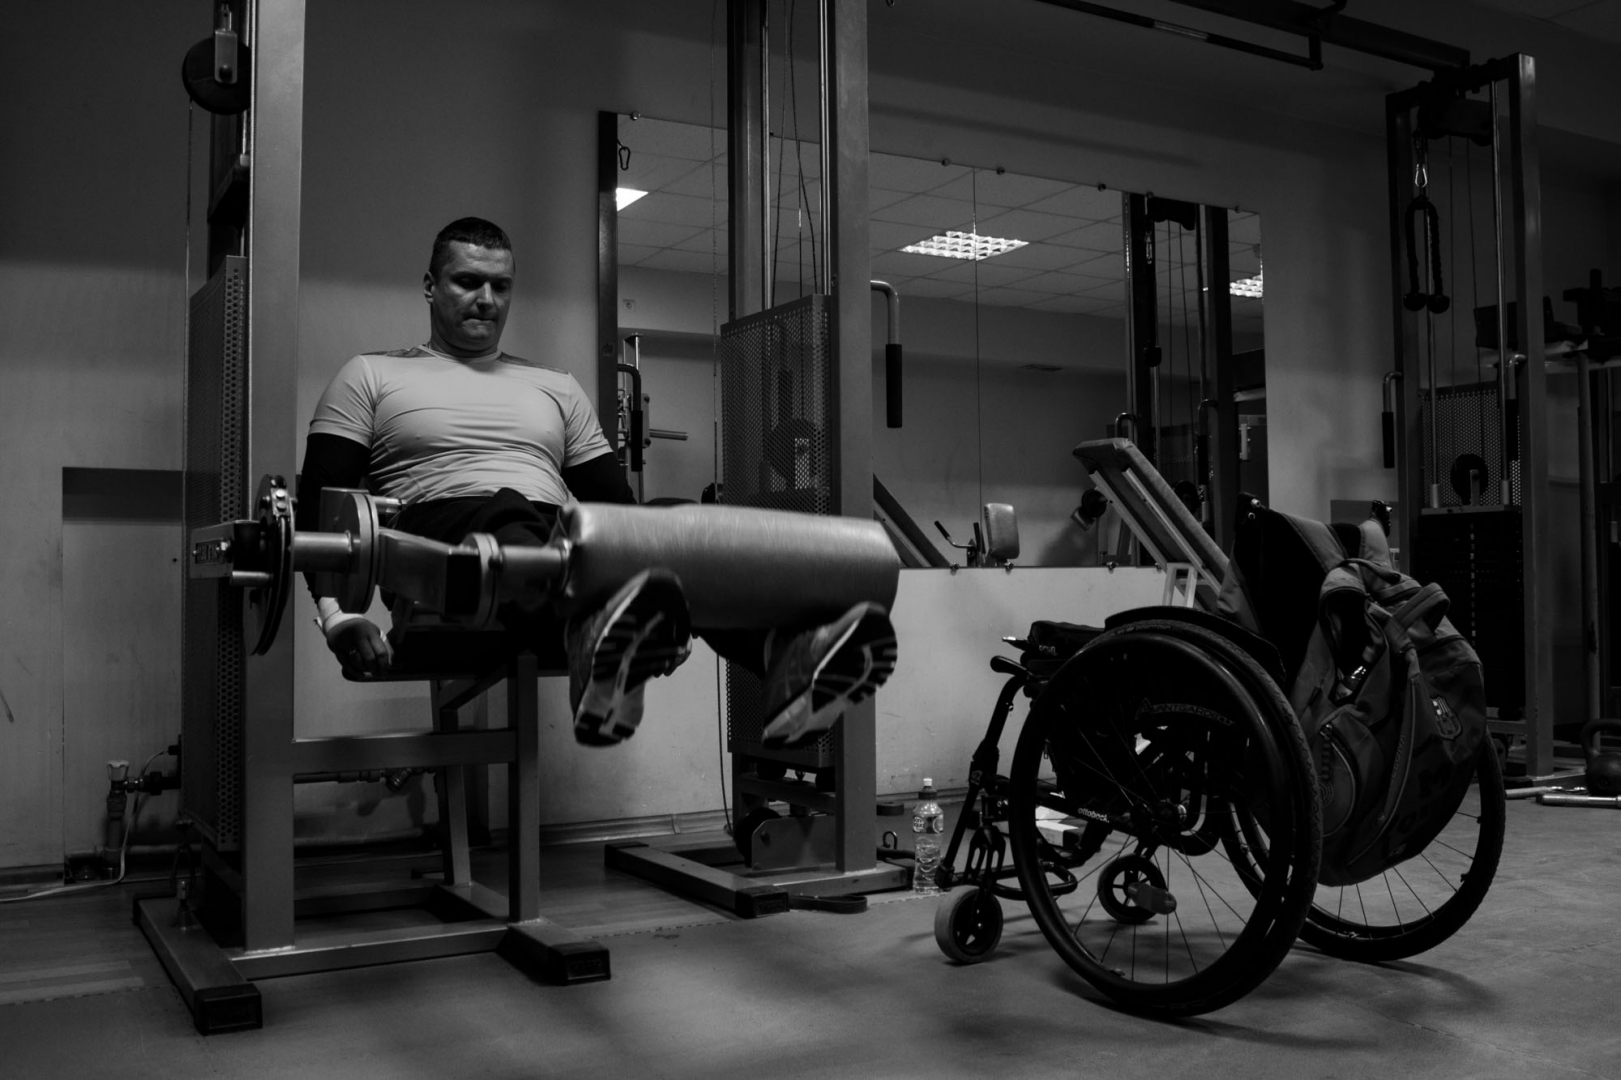 Андрей Кожемякин выполняет упражнение на разгибание ног на тренажере для проработки передней поверхности бедра. Из-за травмы у Андрея отсутствует чувствительность в ногах, но благодаря ежедневным тренировкам он может поднимать минимальный вес